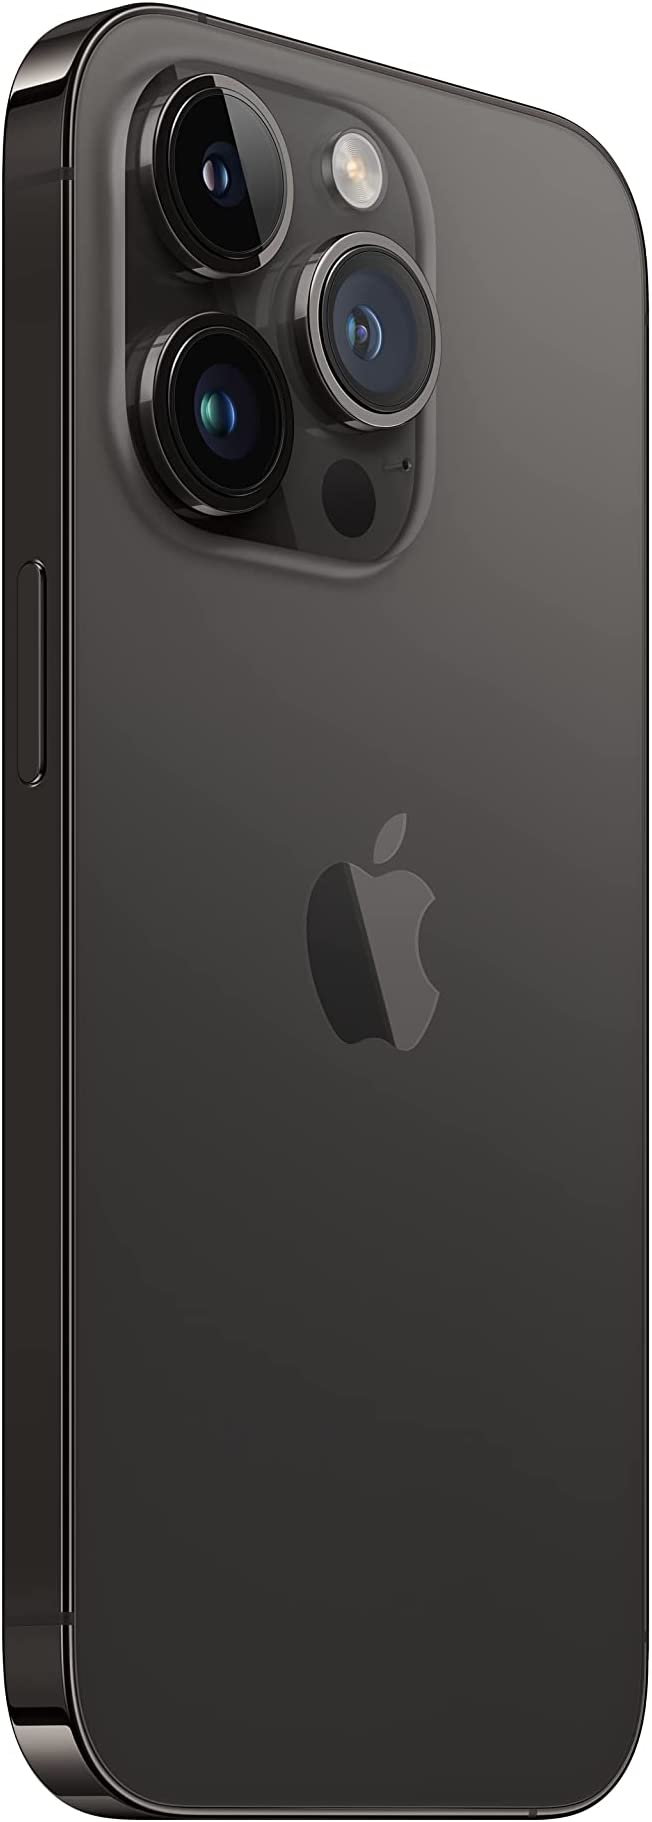 جوال ايفون 14 برو الجديد من ابل (128 جيجا) - أسود